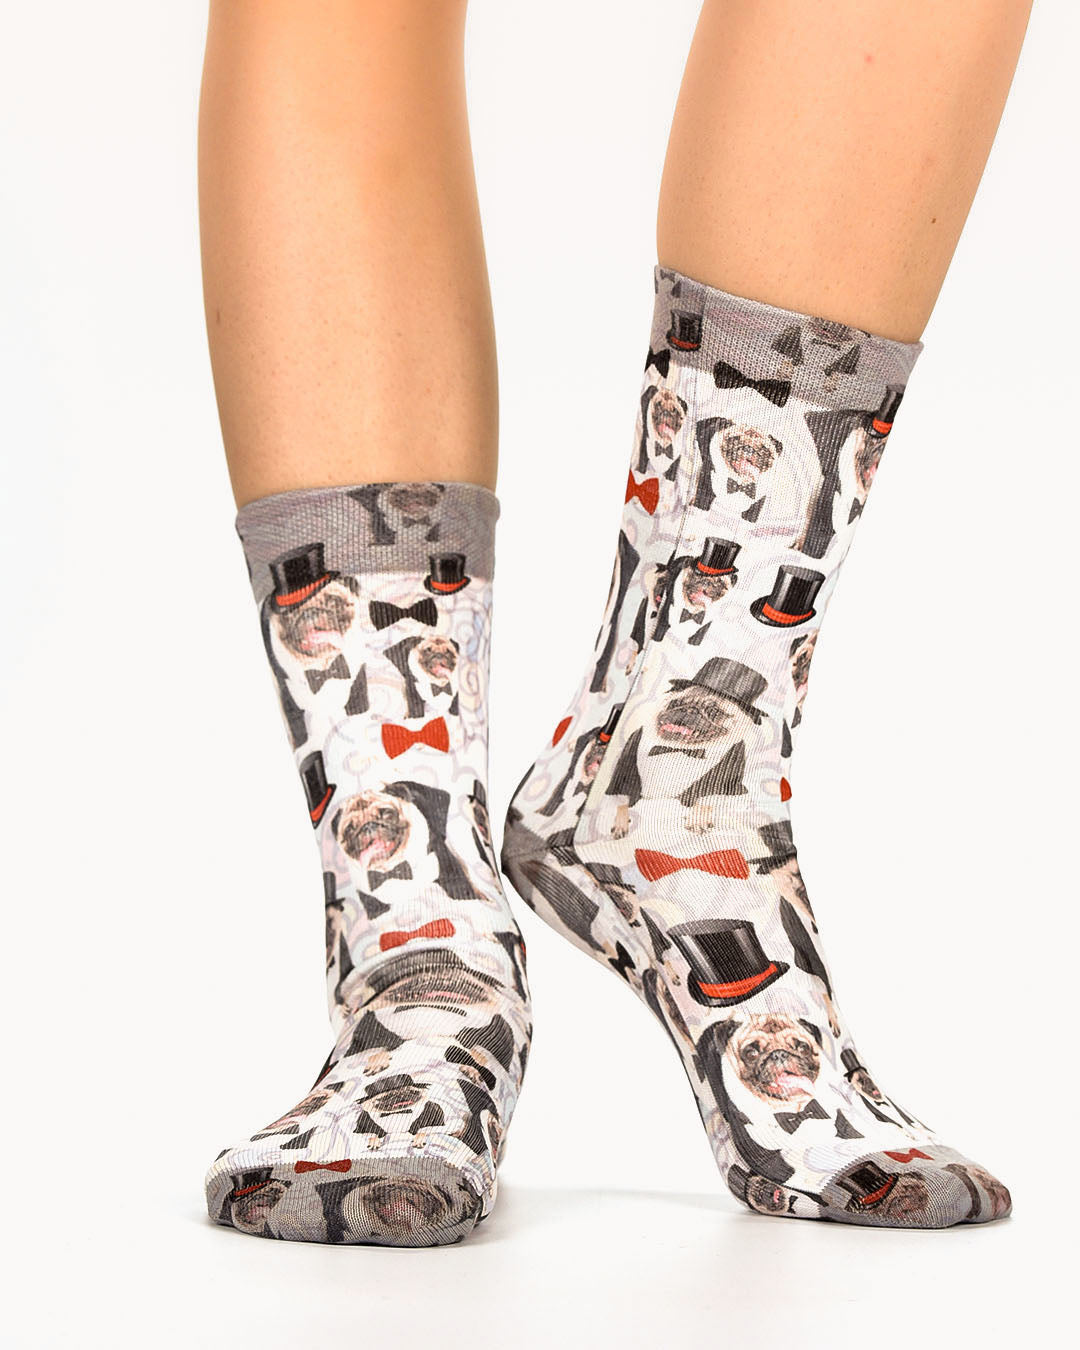 Dressed Pug Lady Socks